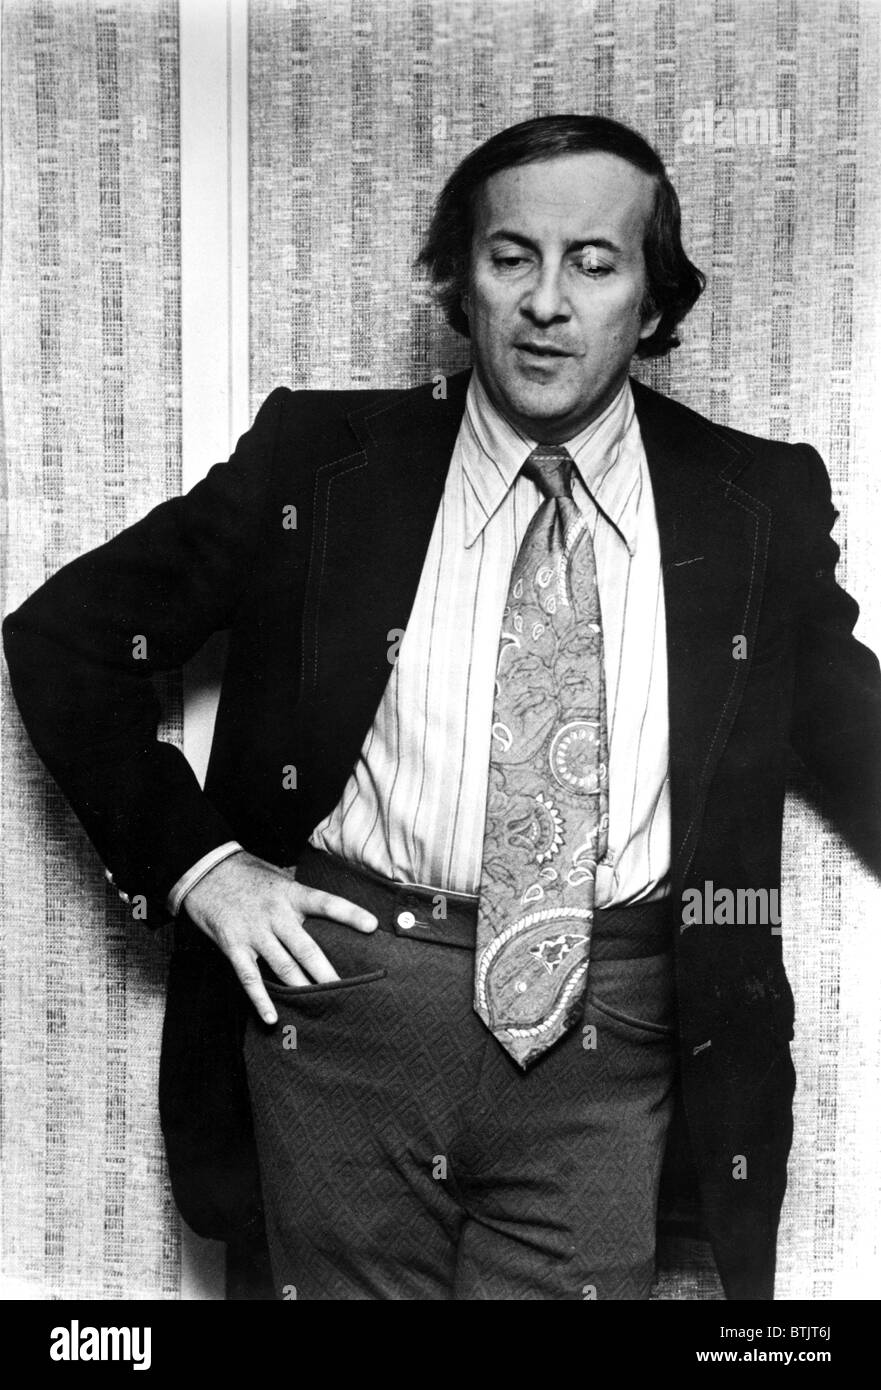 DR. ROBERT ATKINS, c. mid-1970s Stock Photo